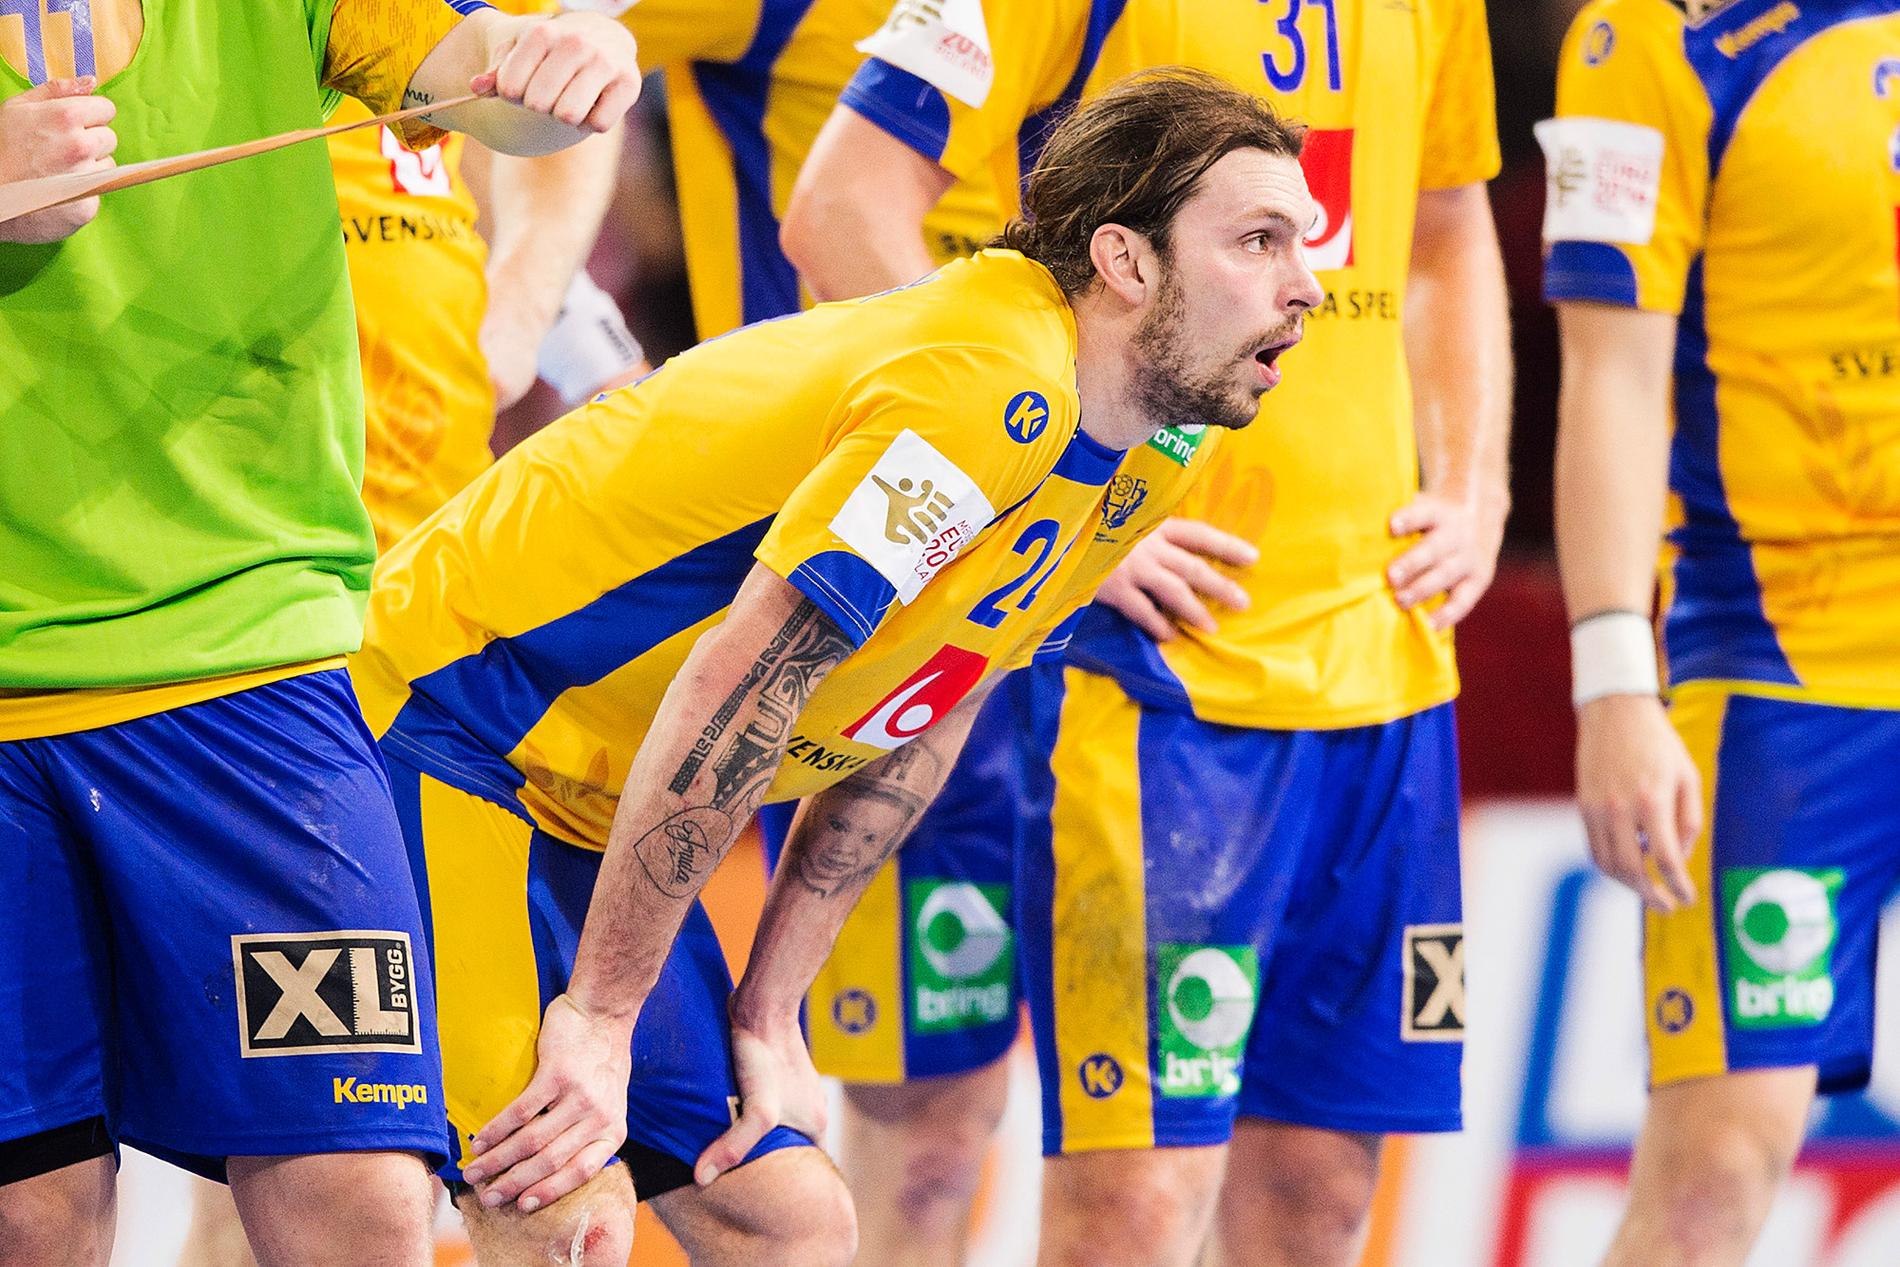 Tyvärr Fredrik Petersen, oddsen pekar på att Sverige missar slutspelet.